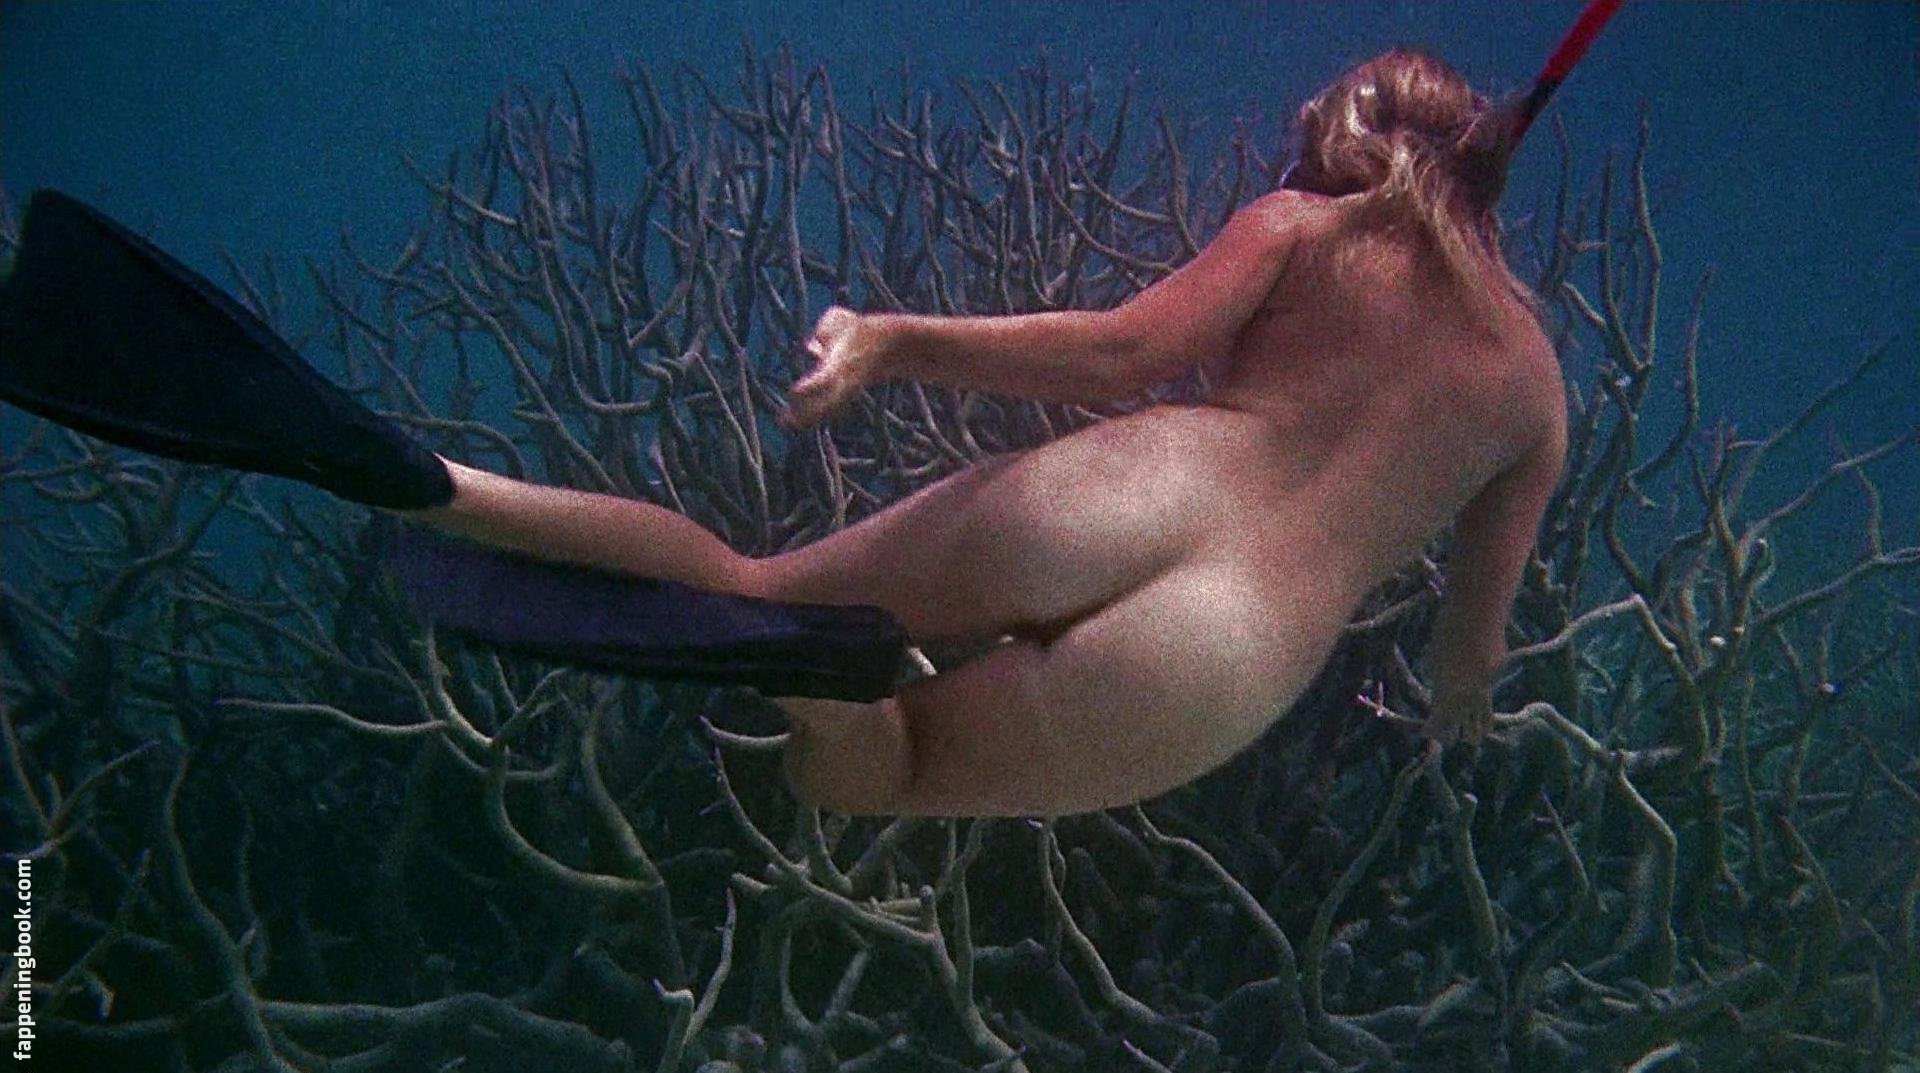 Helen Mirren Nude